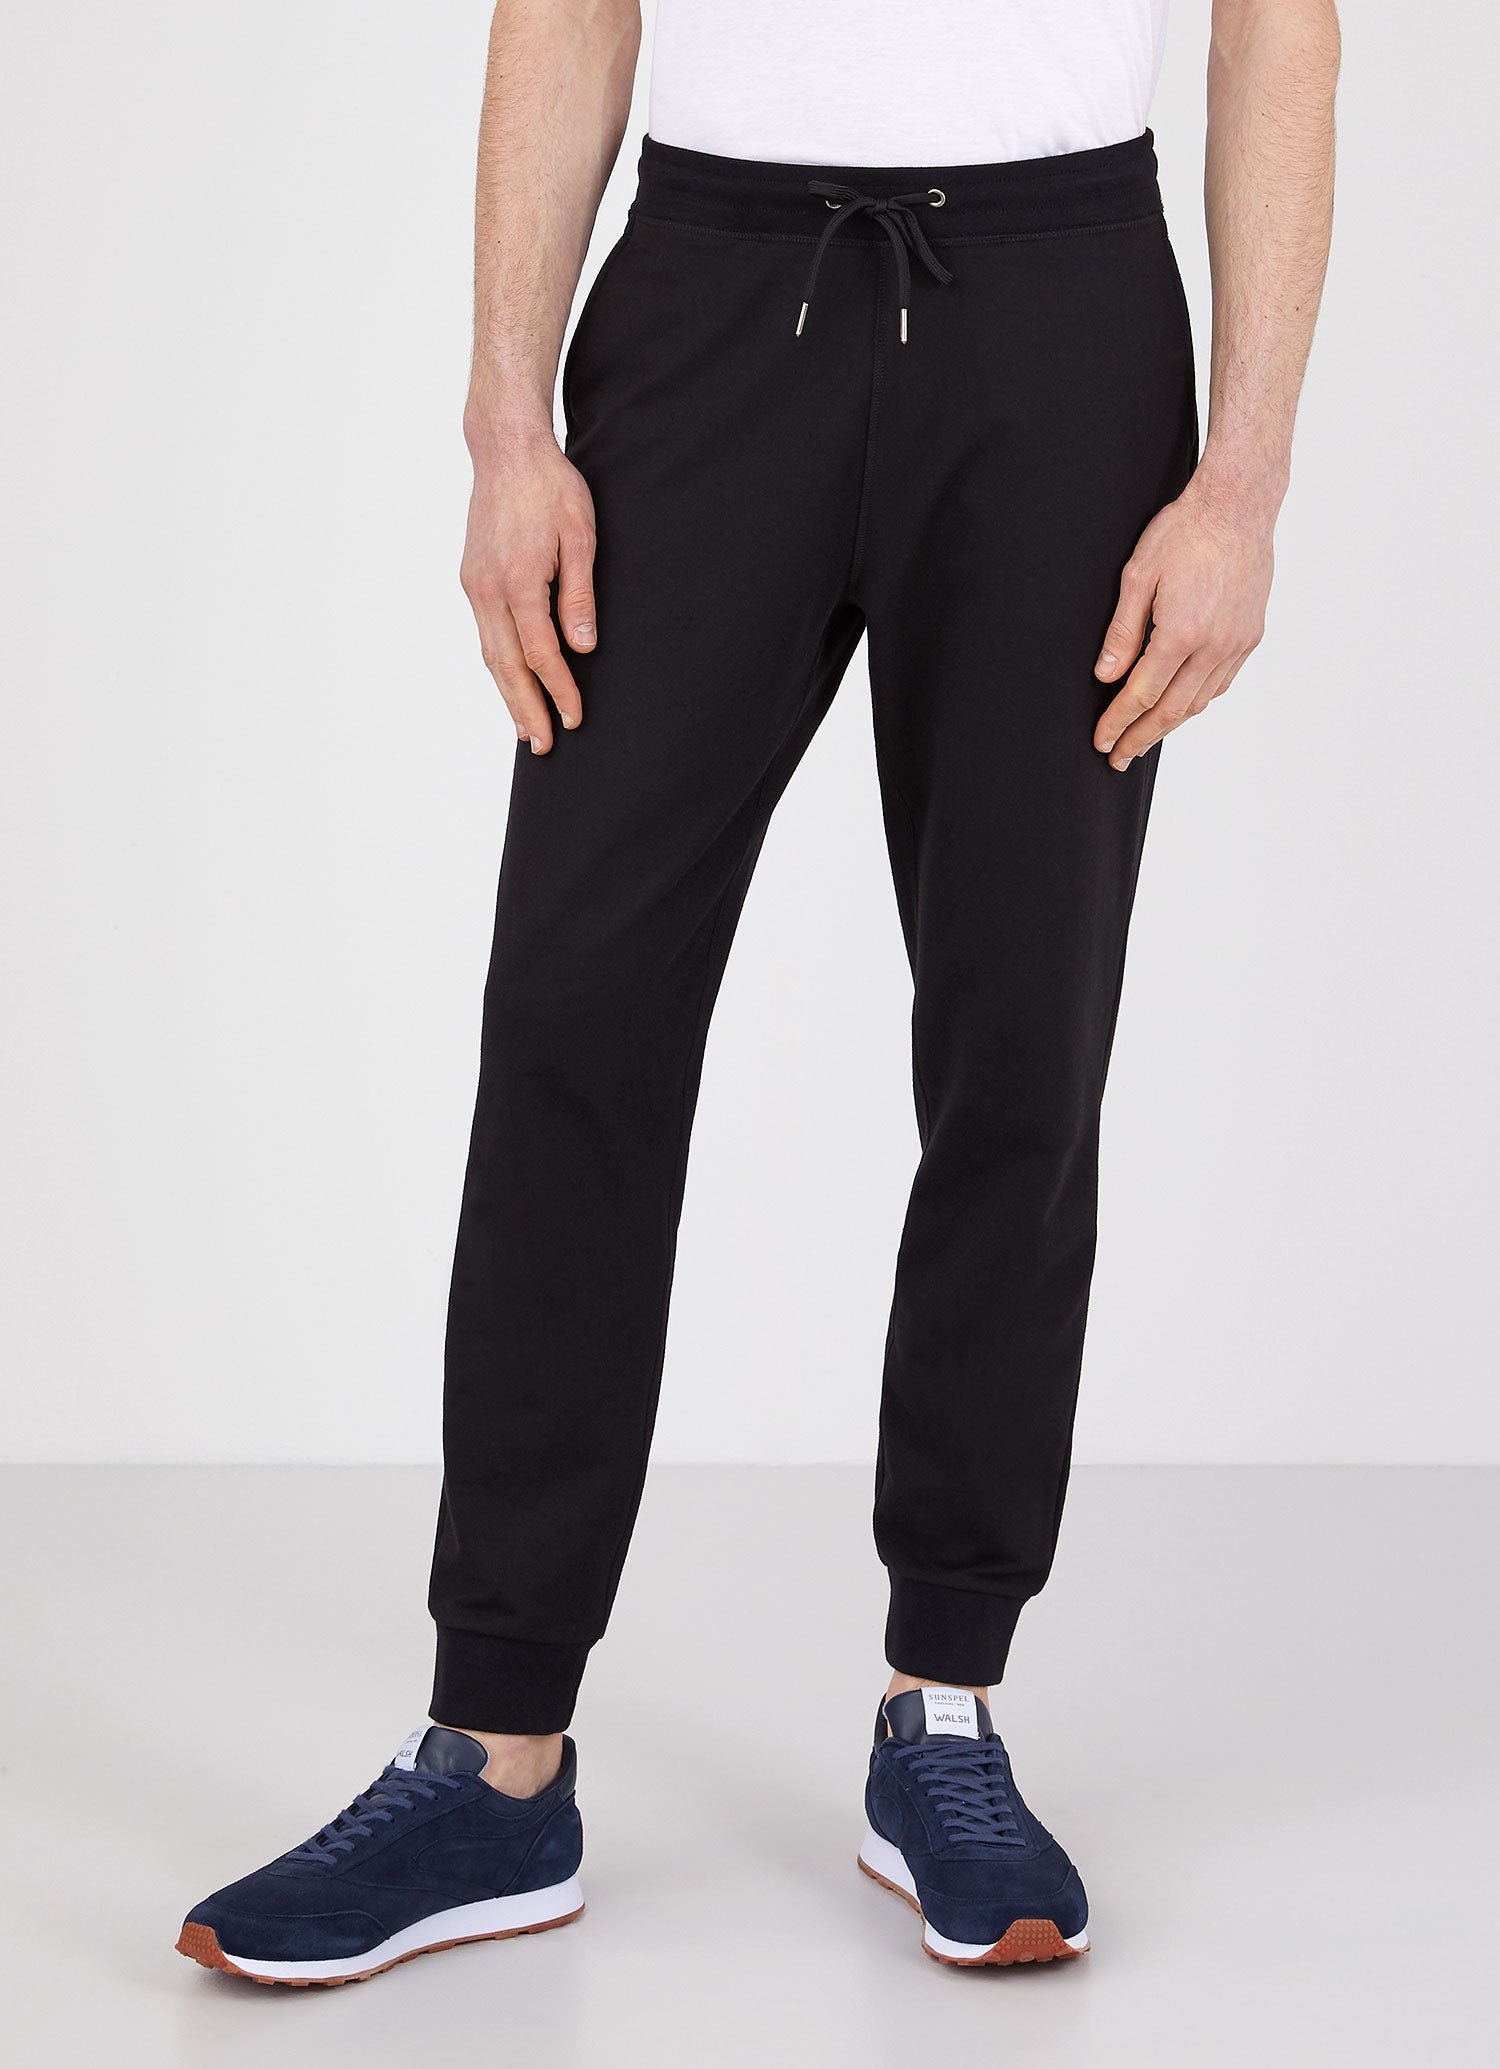 Men's DriRelease Active Sweatpants in Black